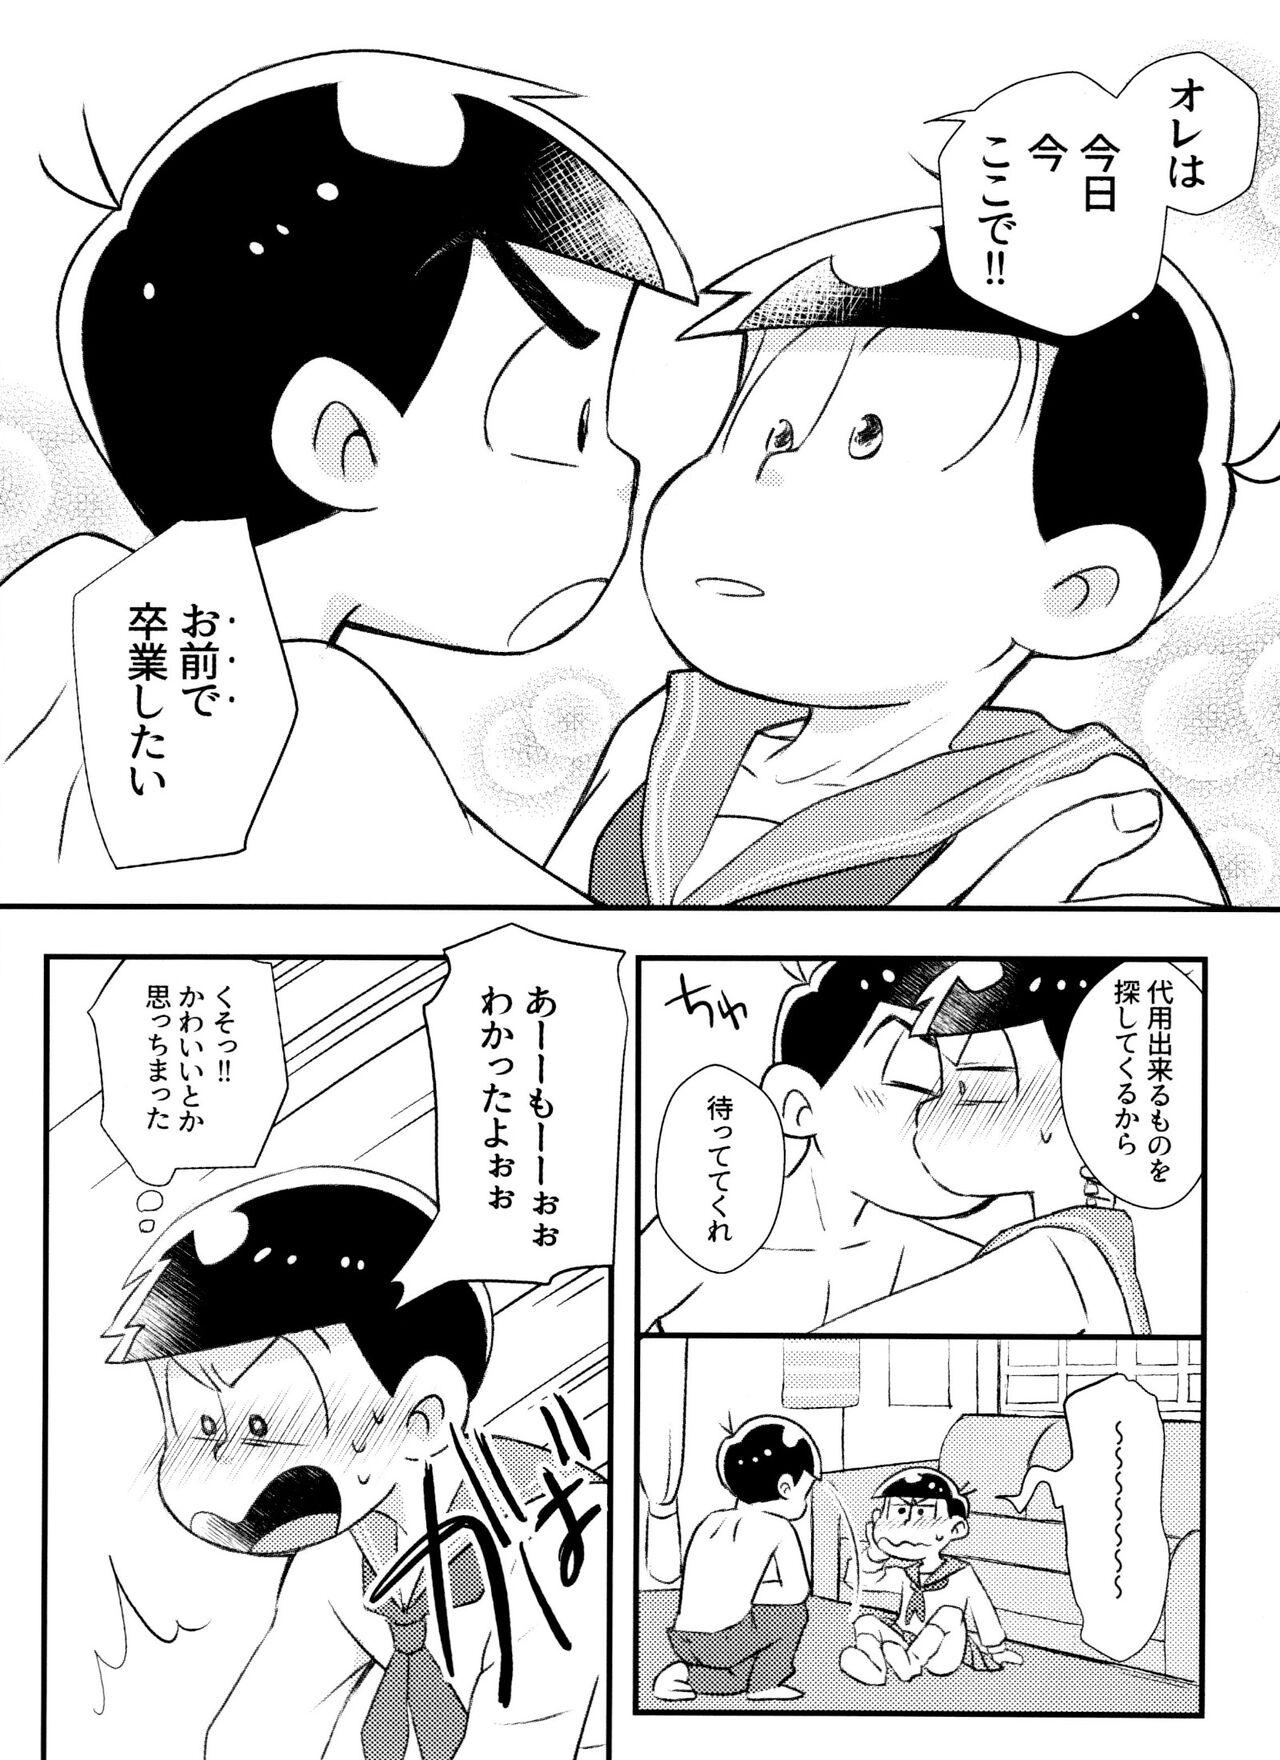 Chaturbate Kitaku shitara Sailor Fuku Kita Ani ga Ita. - Osomatsu-san Hardcore Porno - Page 12